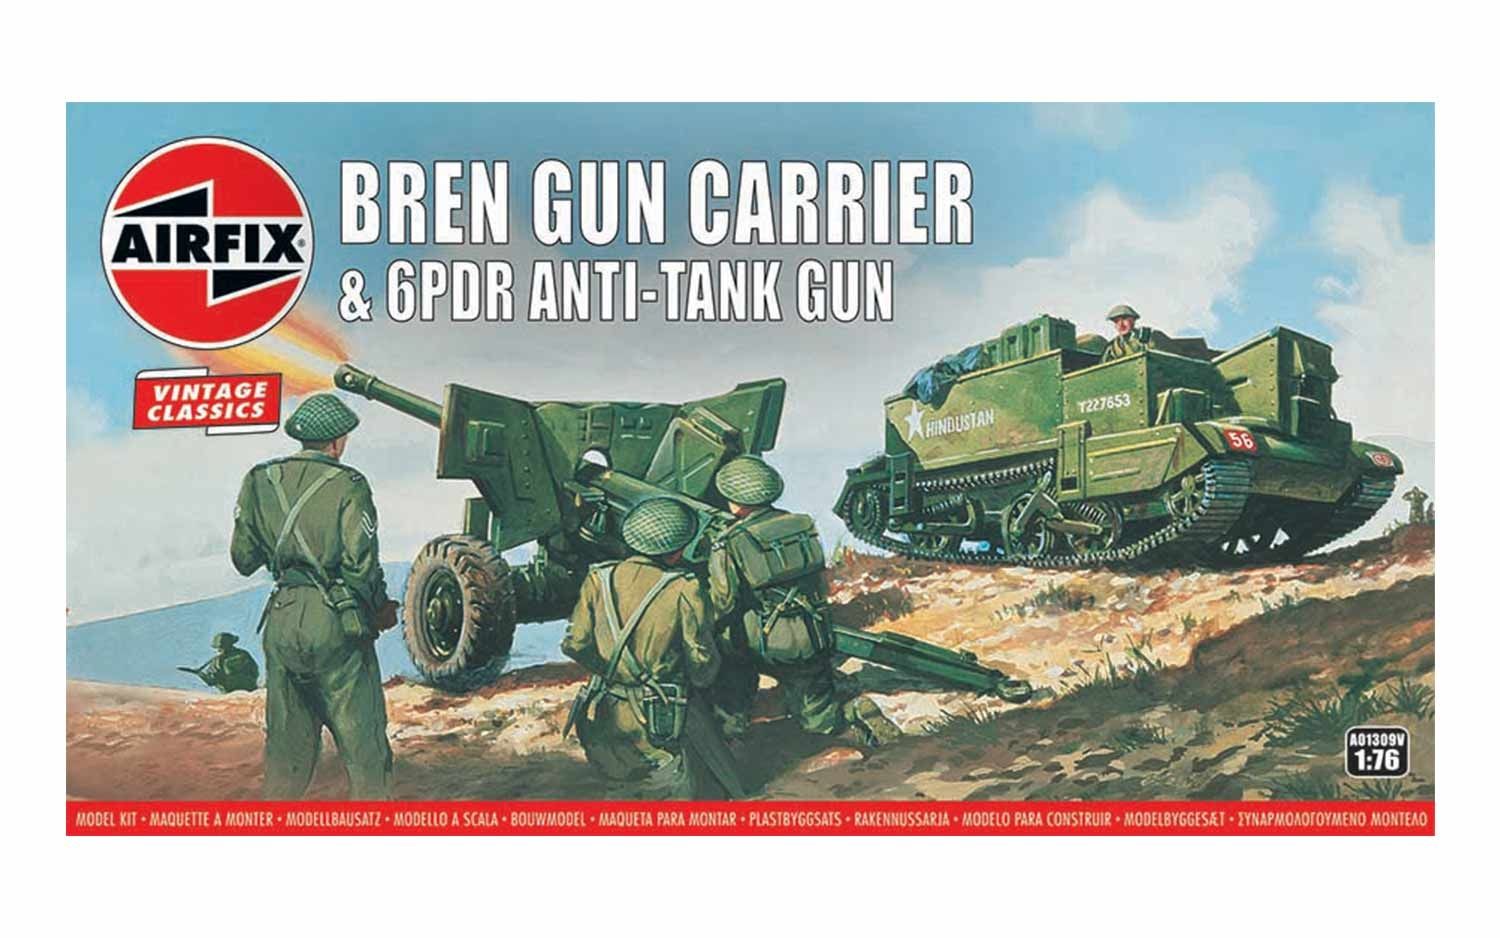 Bren Gun Carrier & 6PDR Anti- Tank Gun (1:76) - Loaded Dice